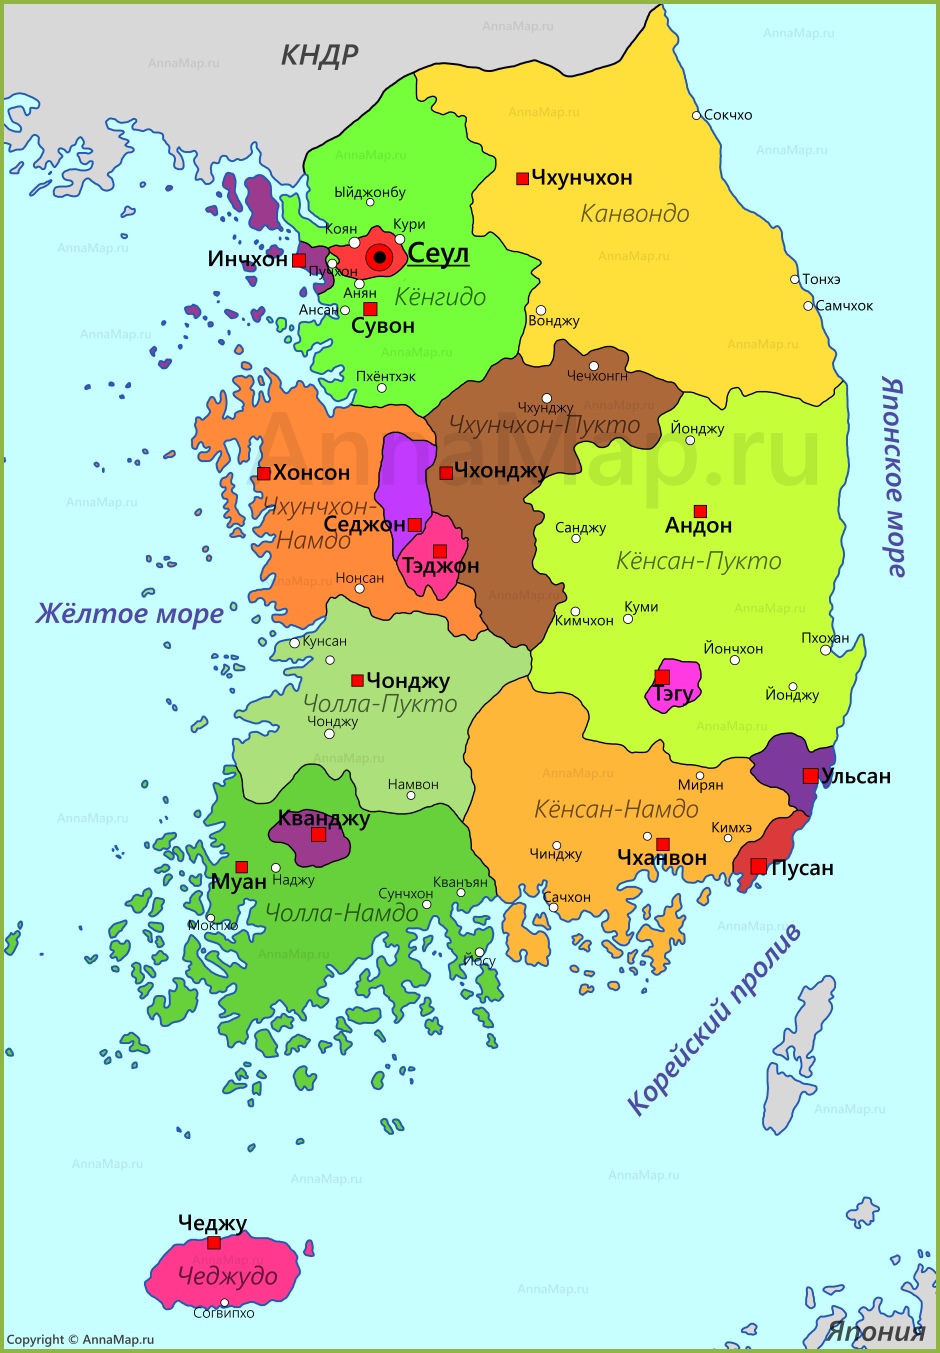 южная корея на карте мира